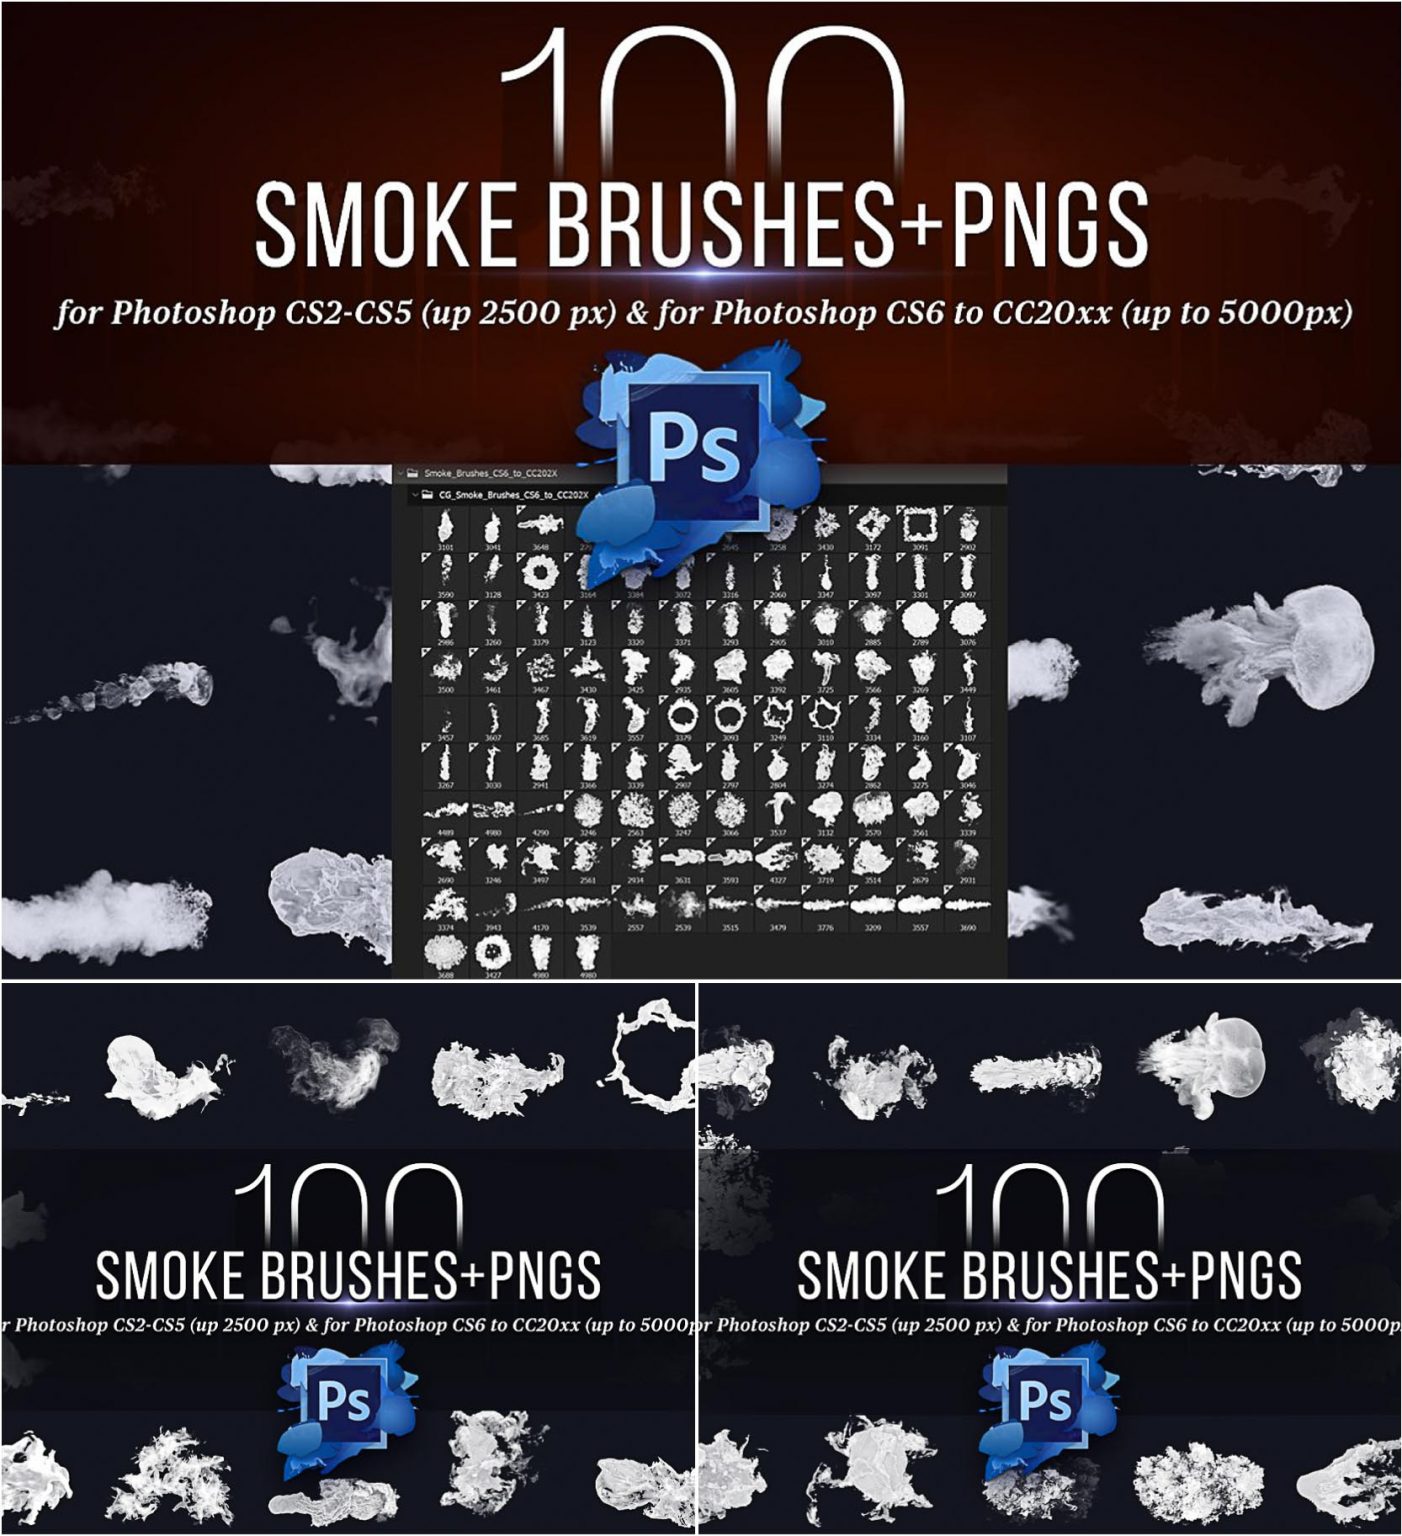 adobe photoshop smoke brushes download